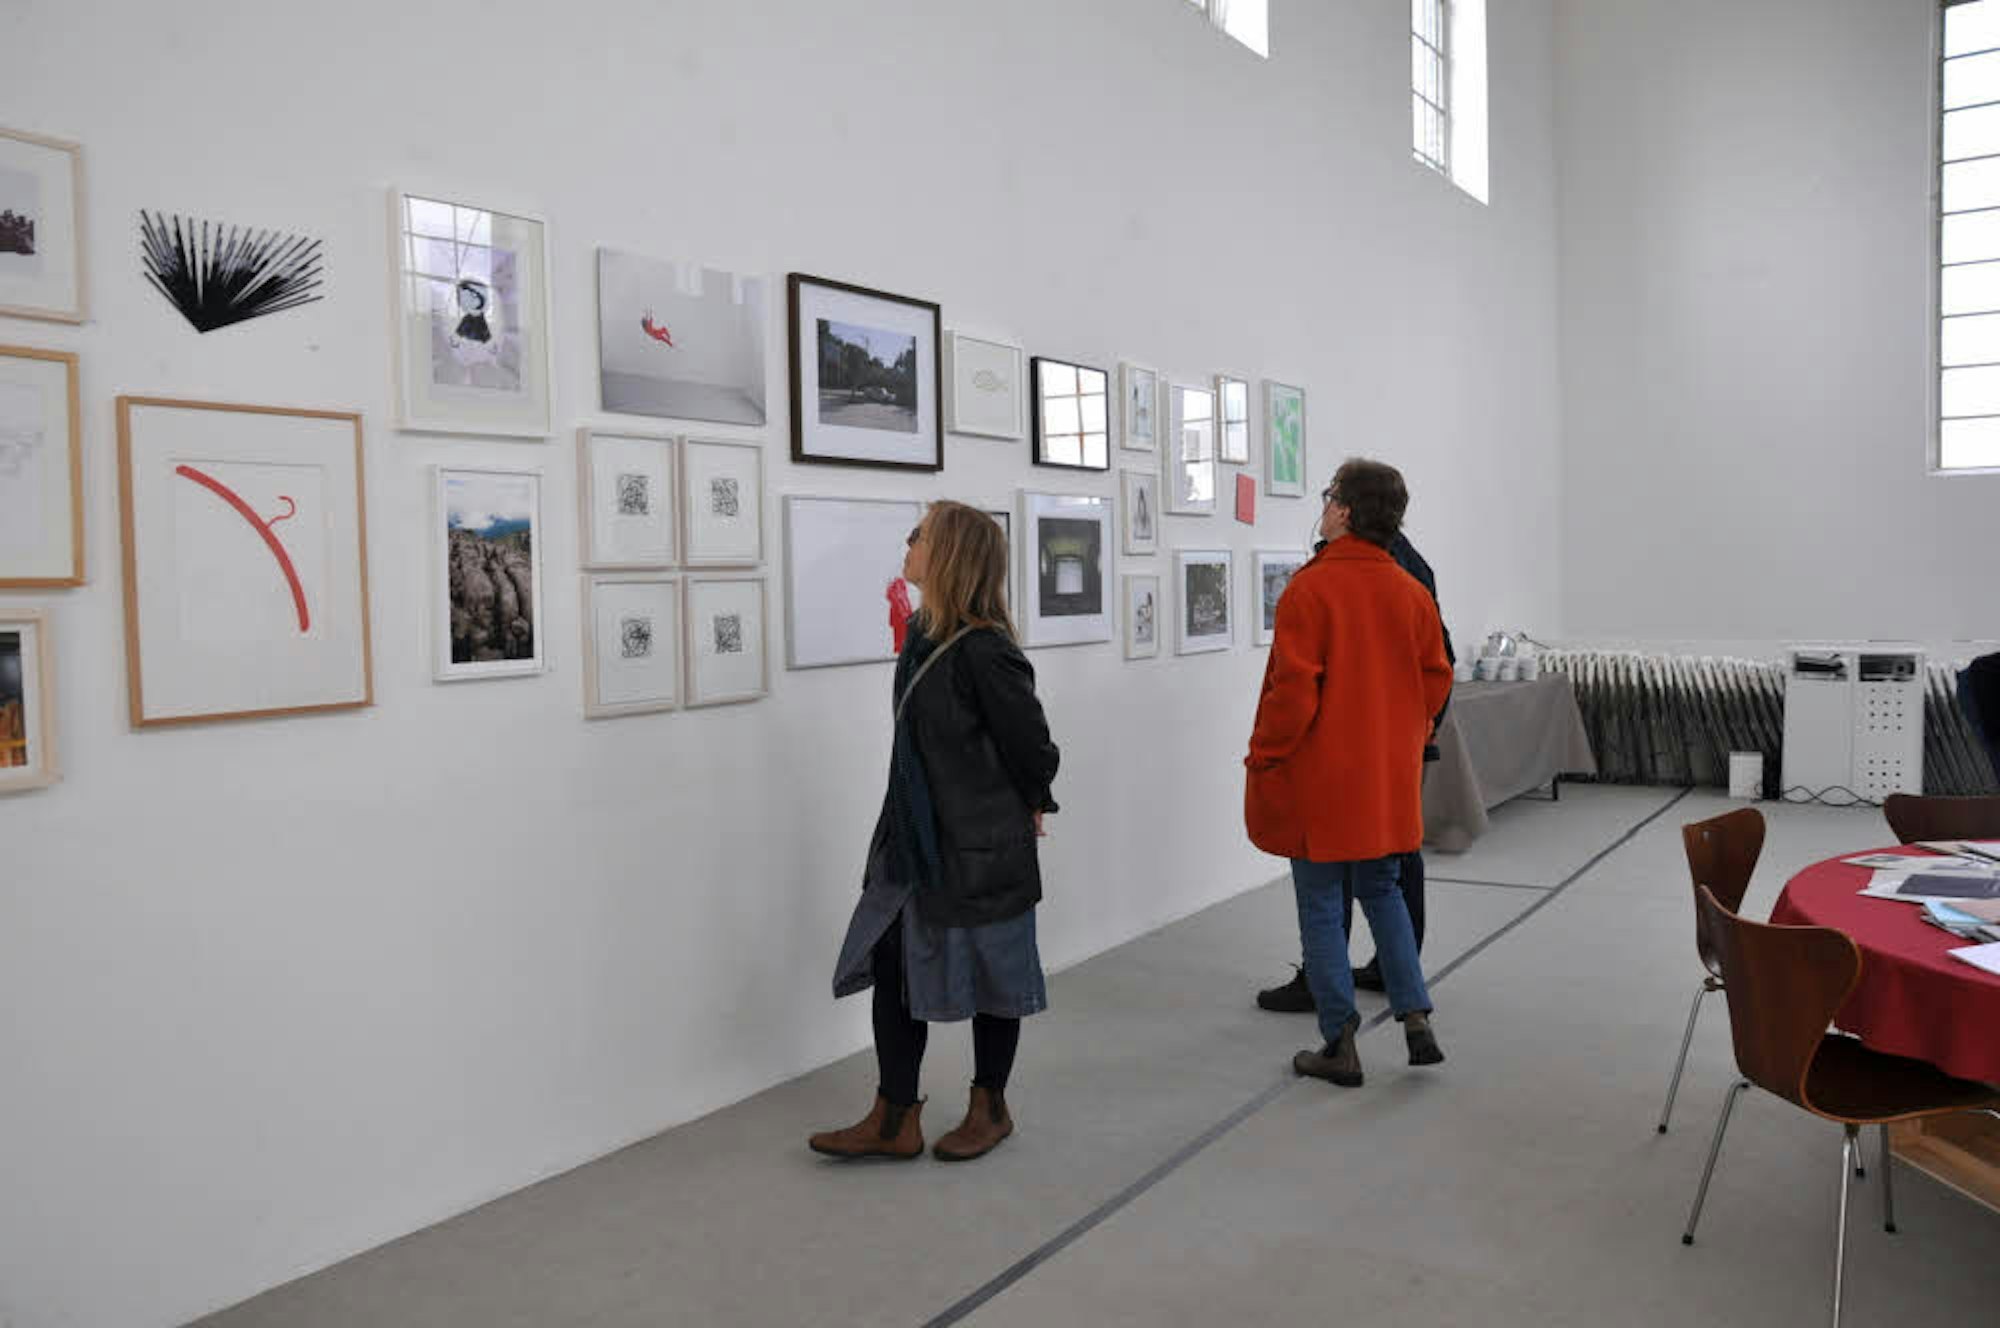 Besucher bestaunen die moderne Kunst im Kunstraum Fuhrwerkswaage.